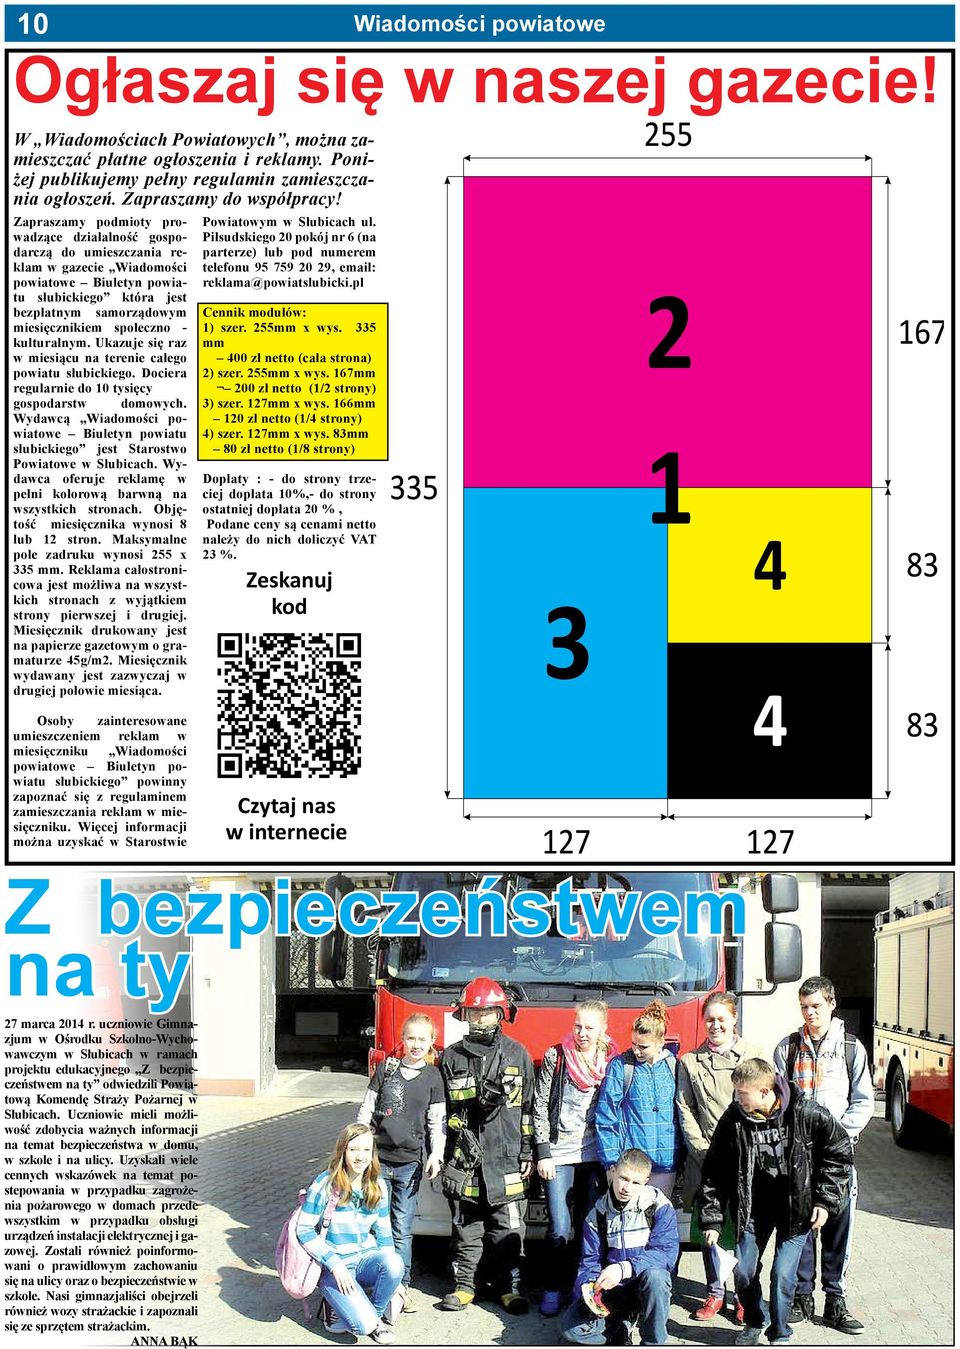 Zapraszamy podmioty prowadzące działalność gospodarczą do umieszczania reklam w gazecie Wiadomości powiatowe Biuletyn powiatu słubickiego która jest bezpłatnym samorządowym miesięcznikiem społeczno -